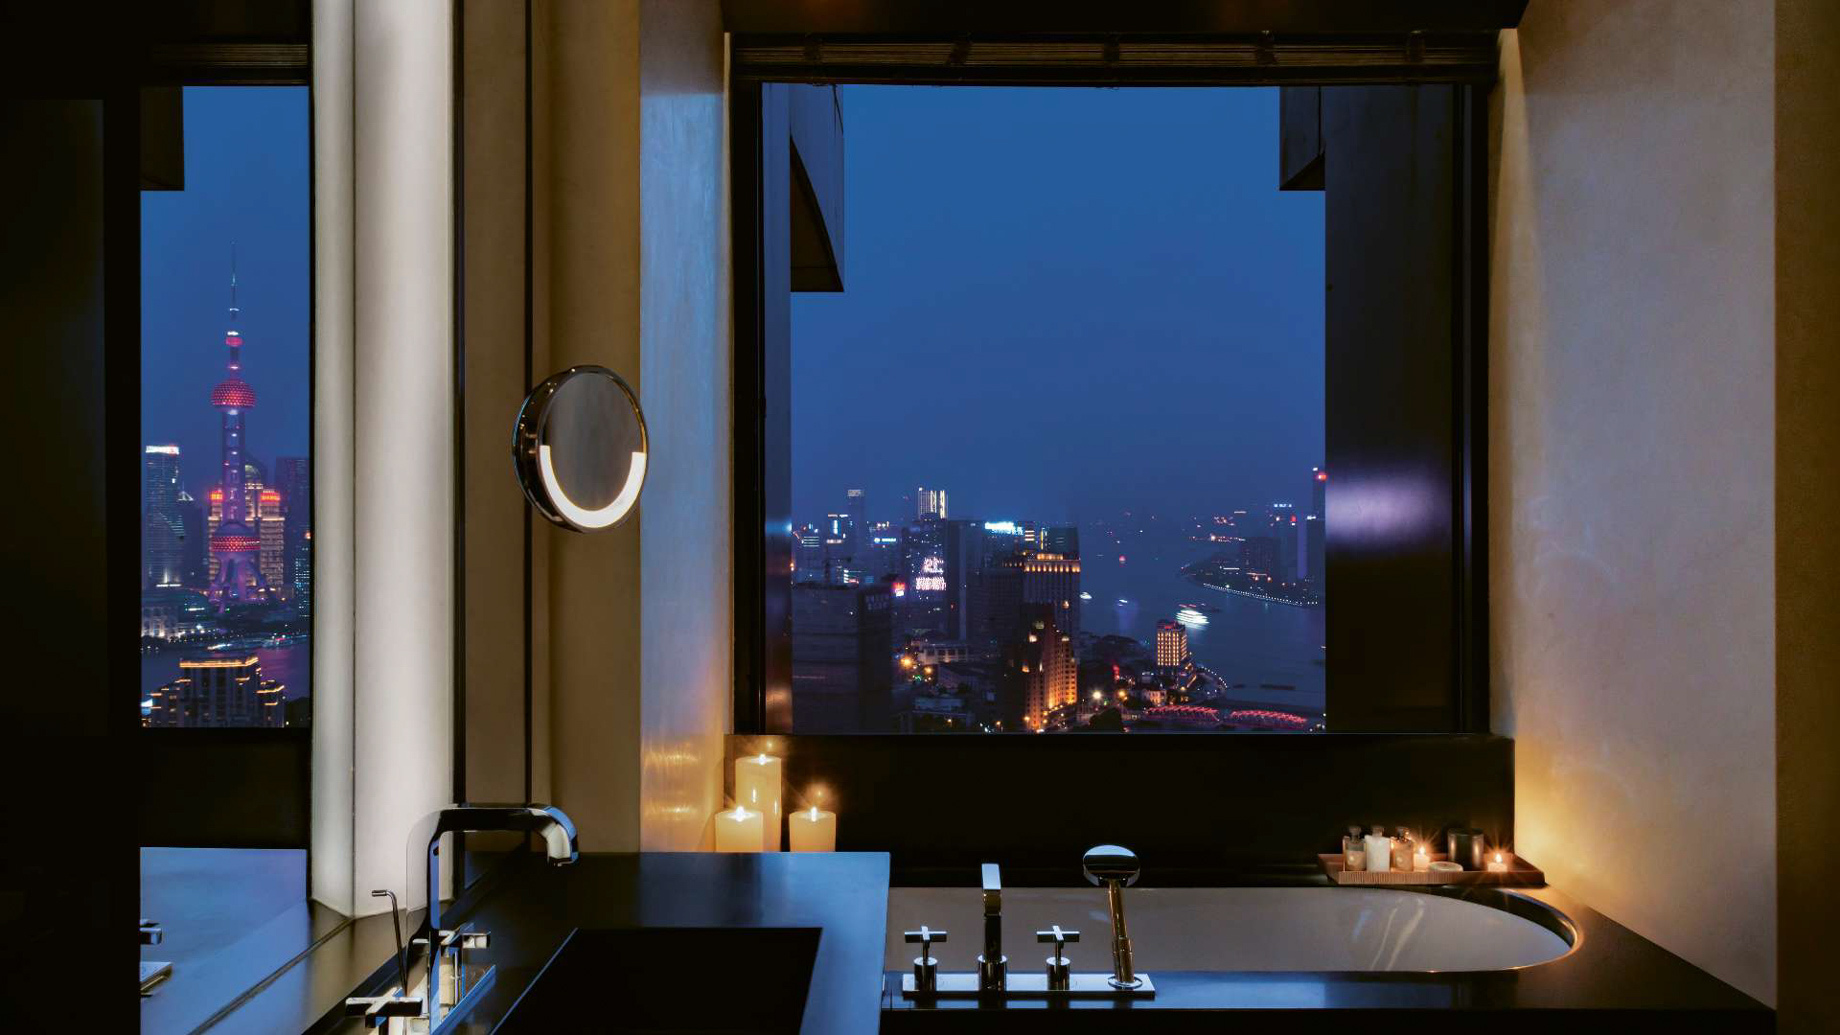 Bvlgari Hotel Shanghai – Shanghai, China – Suite Bathroom Night View